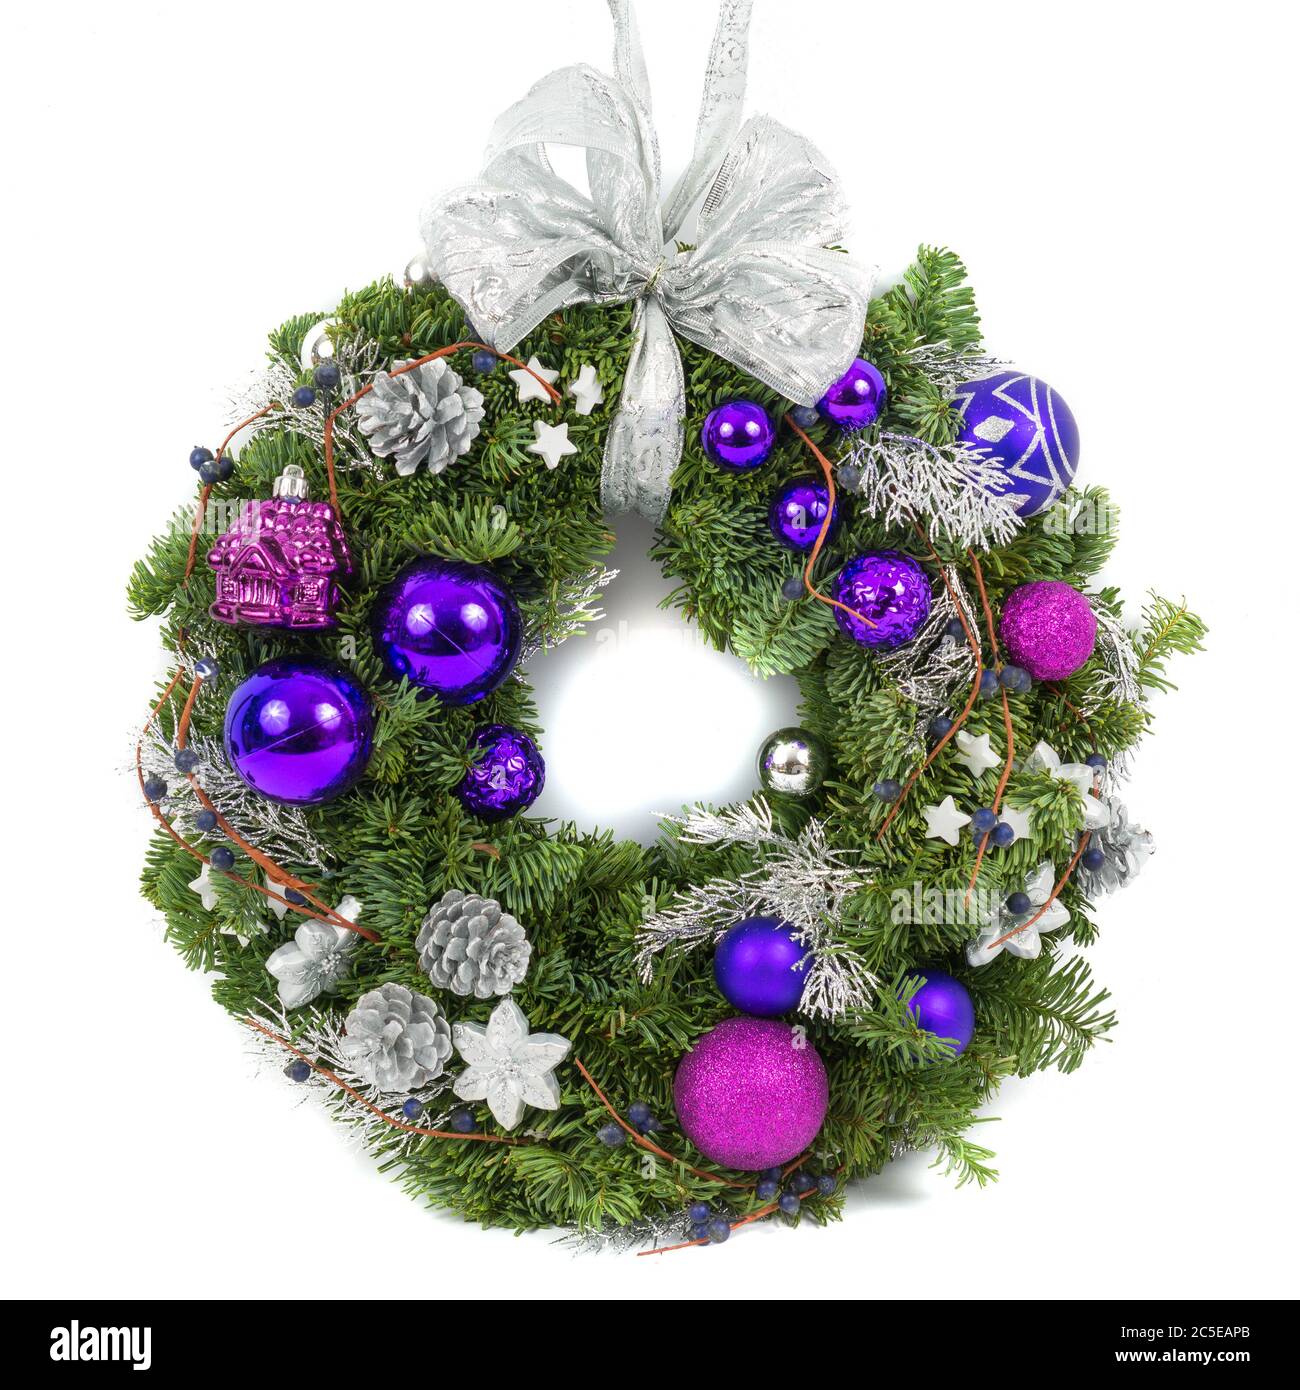 Christmas decoration wreath isolated on white background Stock Photo